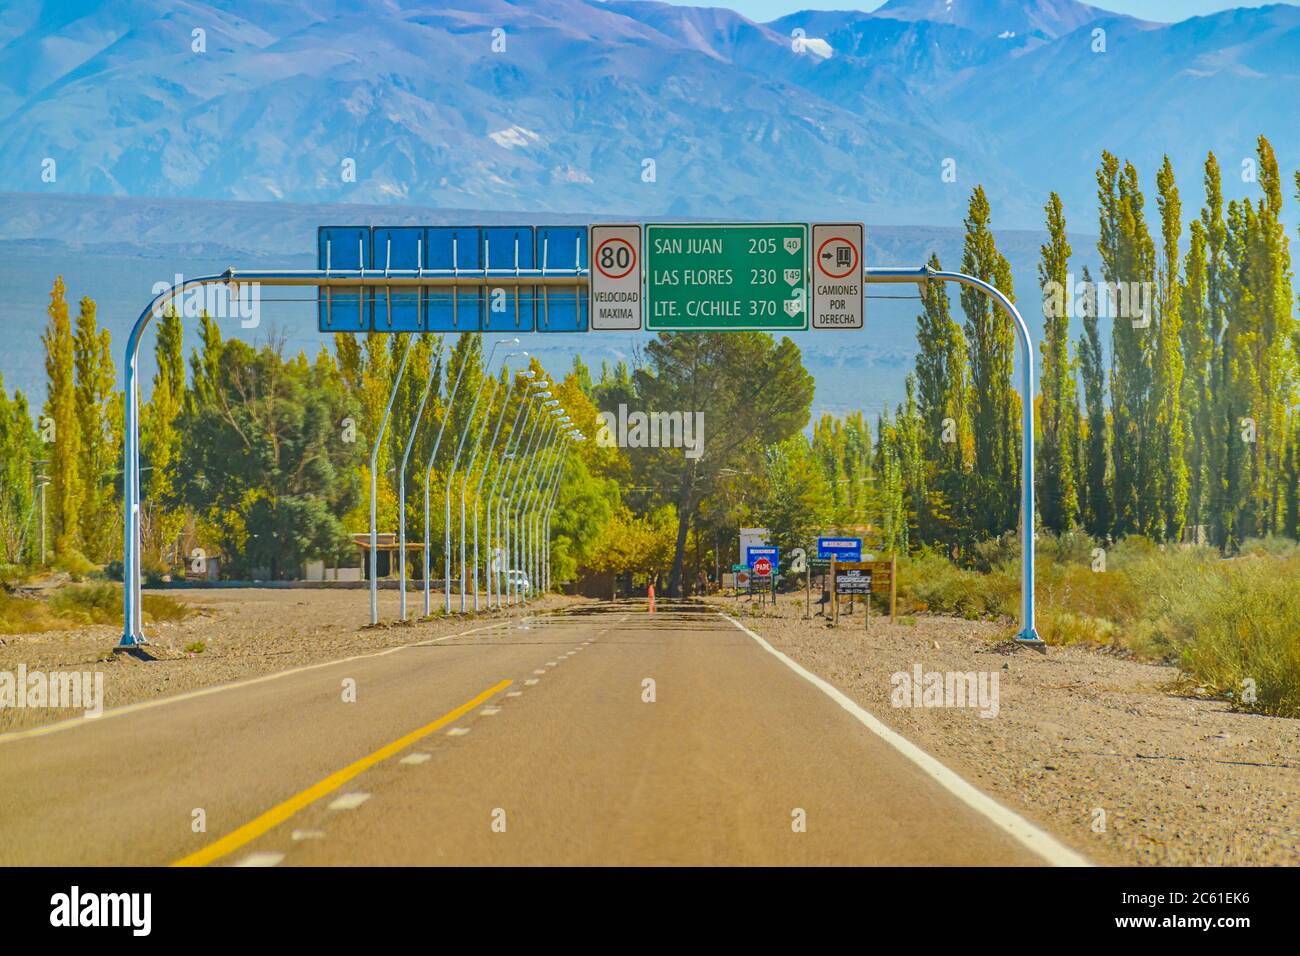 Autostrada vuota in ambiente paesaggio forestale, provincia di san juan, argentina Foto Stock